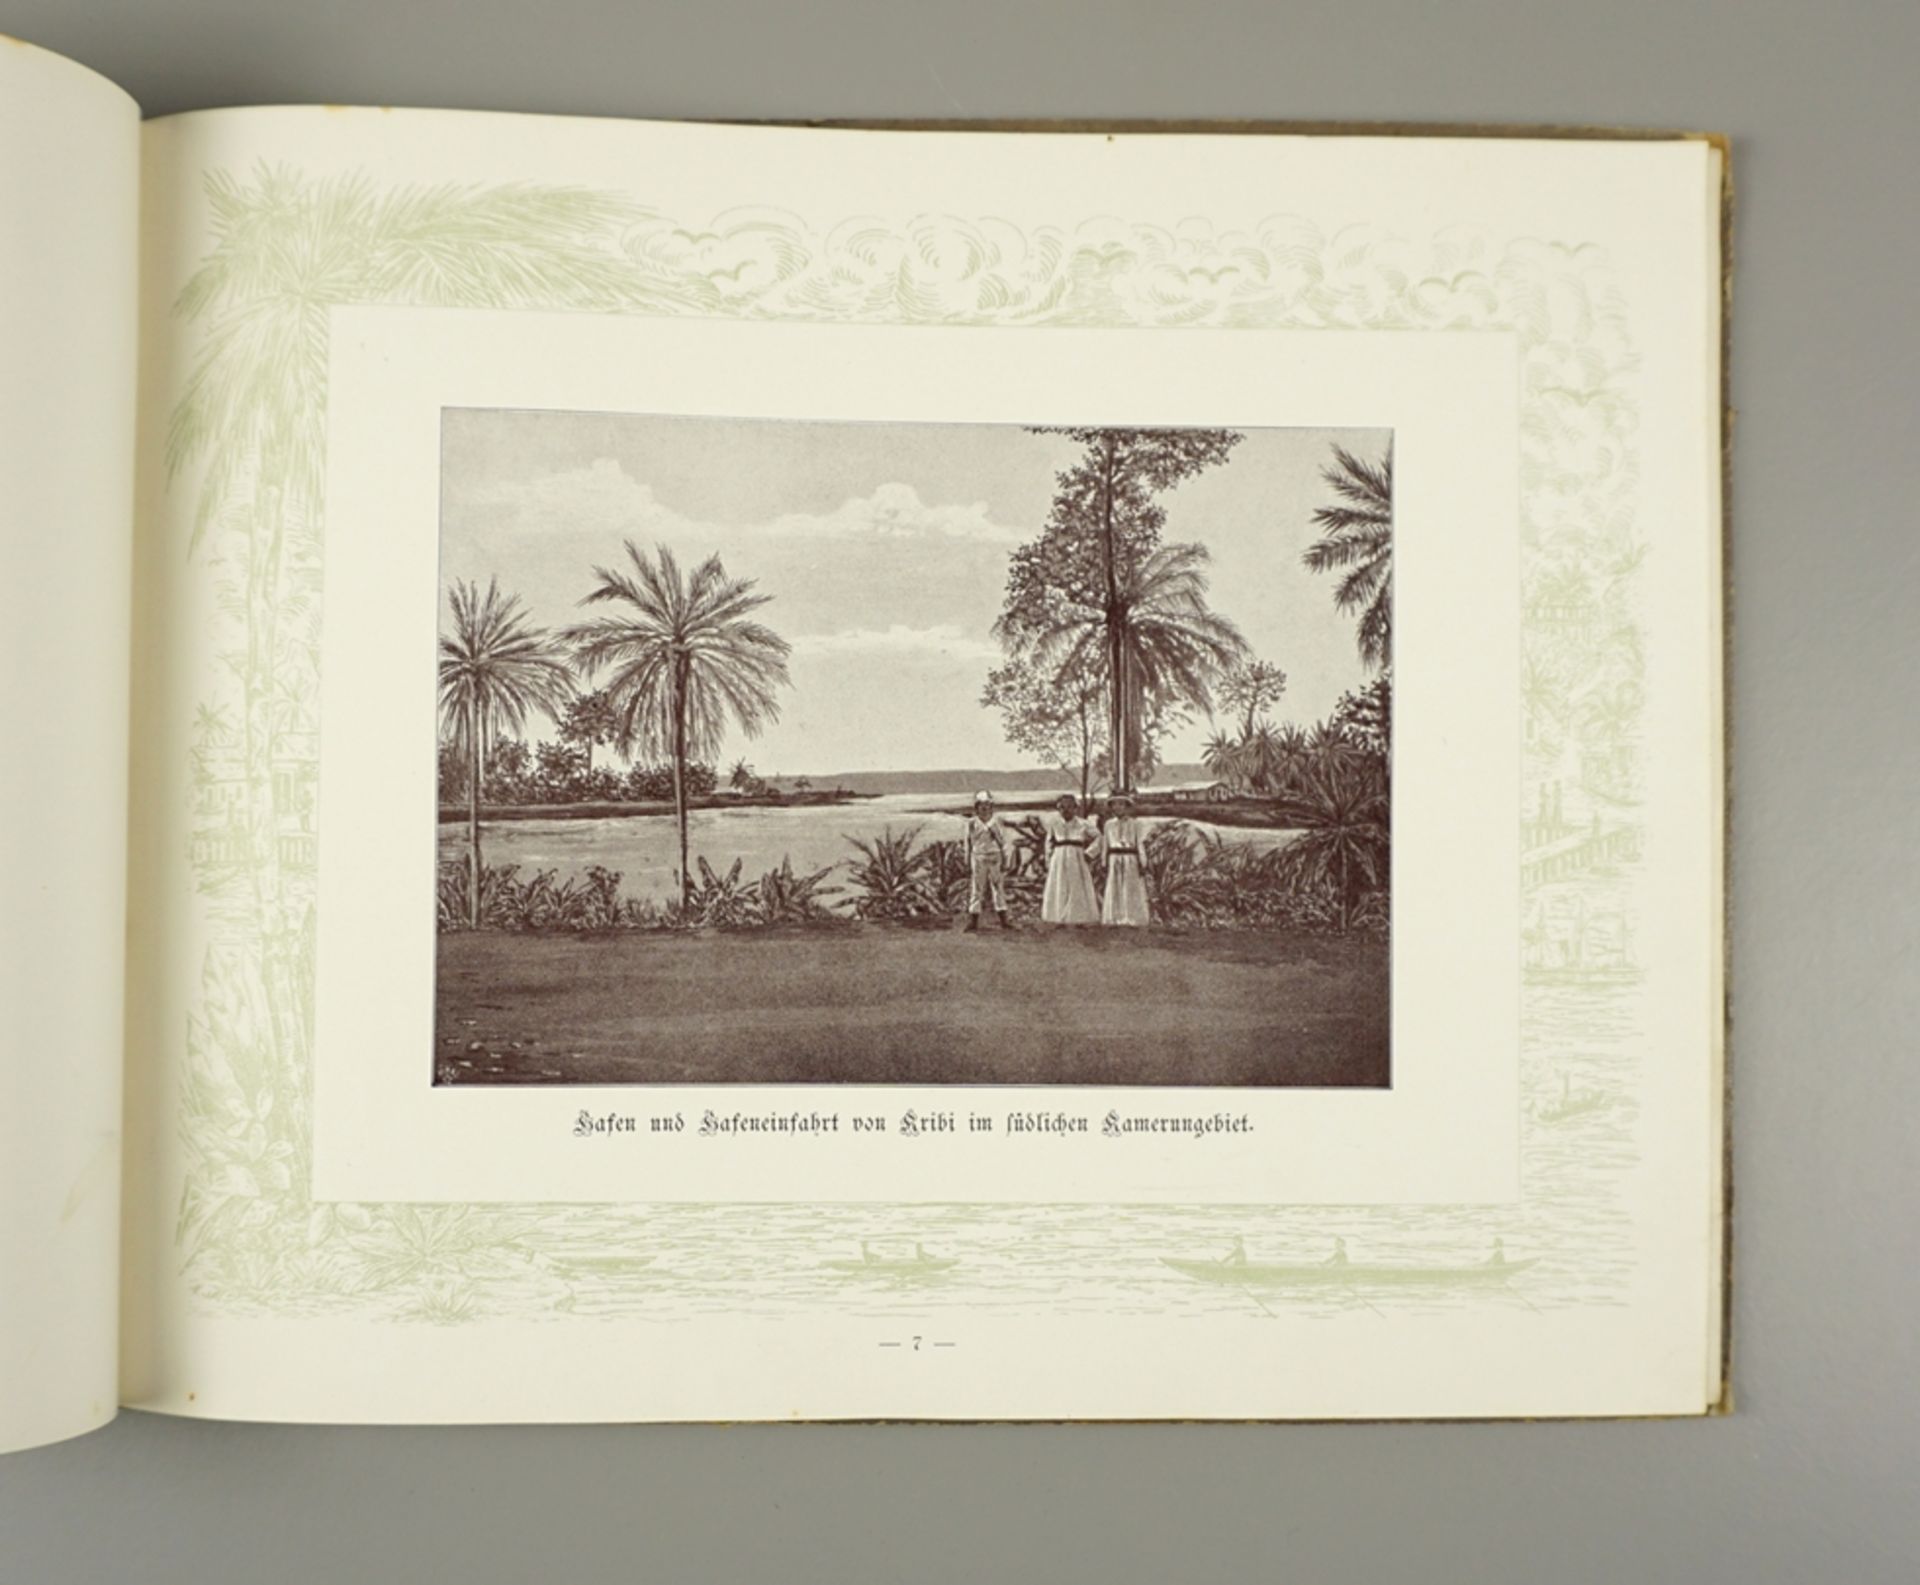 Bildband "Unser Kamerun", Verlag Gustav Poetzsch, Magdeburg, 1899 - Bild 3 aus 3